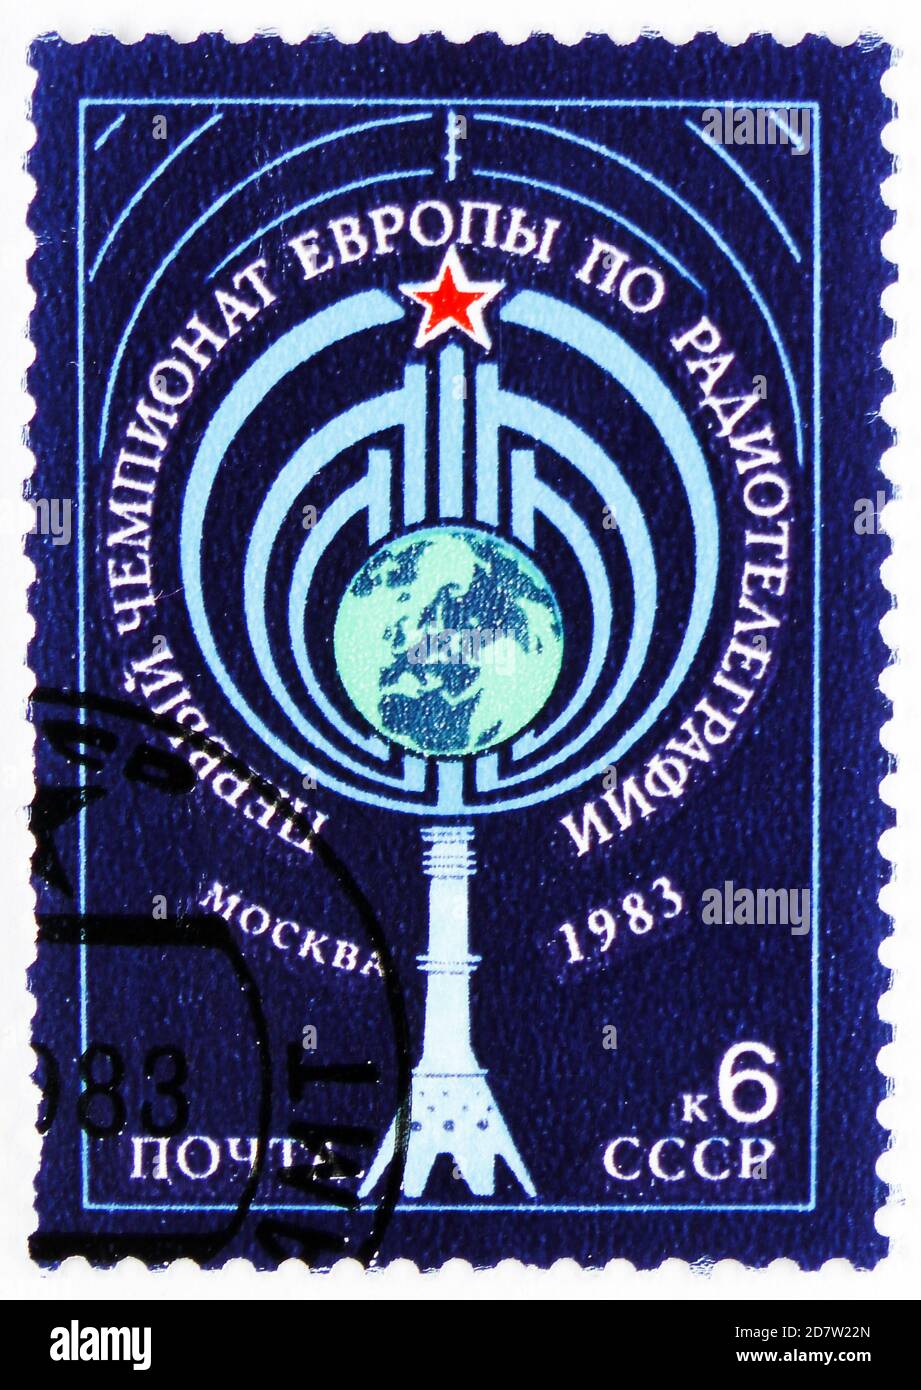 MOSCOU, RUSSIE - 9 OCTOBRE 2020 : timbre-poste imprimé en Union soviétique montre le premier championnat européen de radio-télégraphie, Moscou, série, vers 1983 Banque D'Images